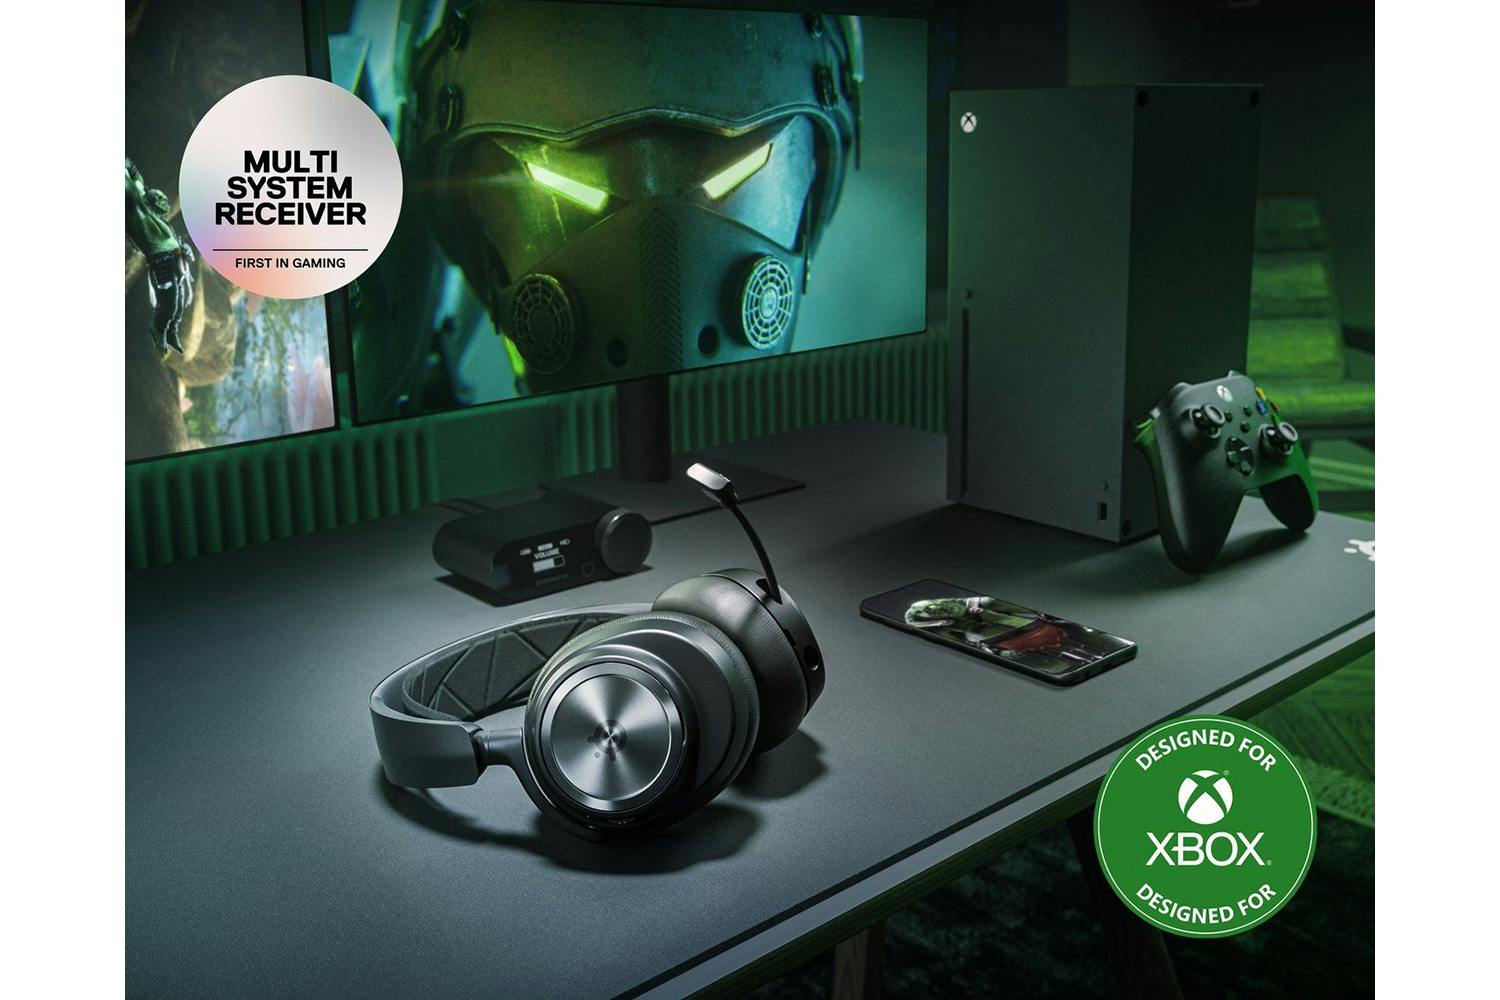 SteelSeries Arctis Nova Pro Wireless Headset For Xbox